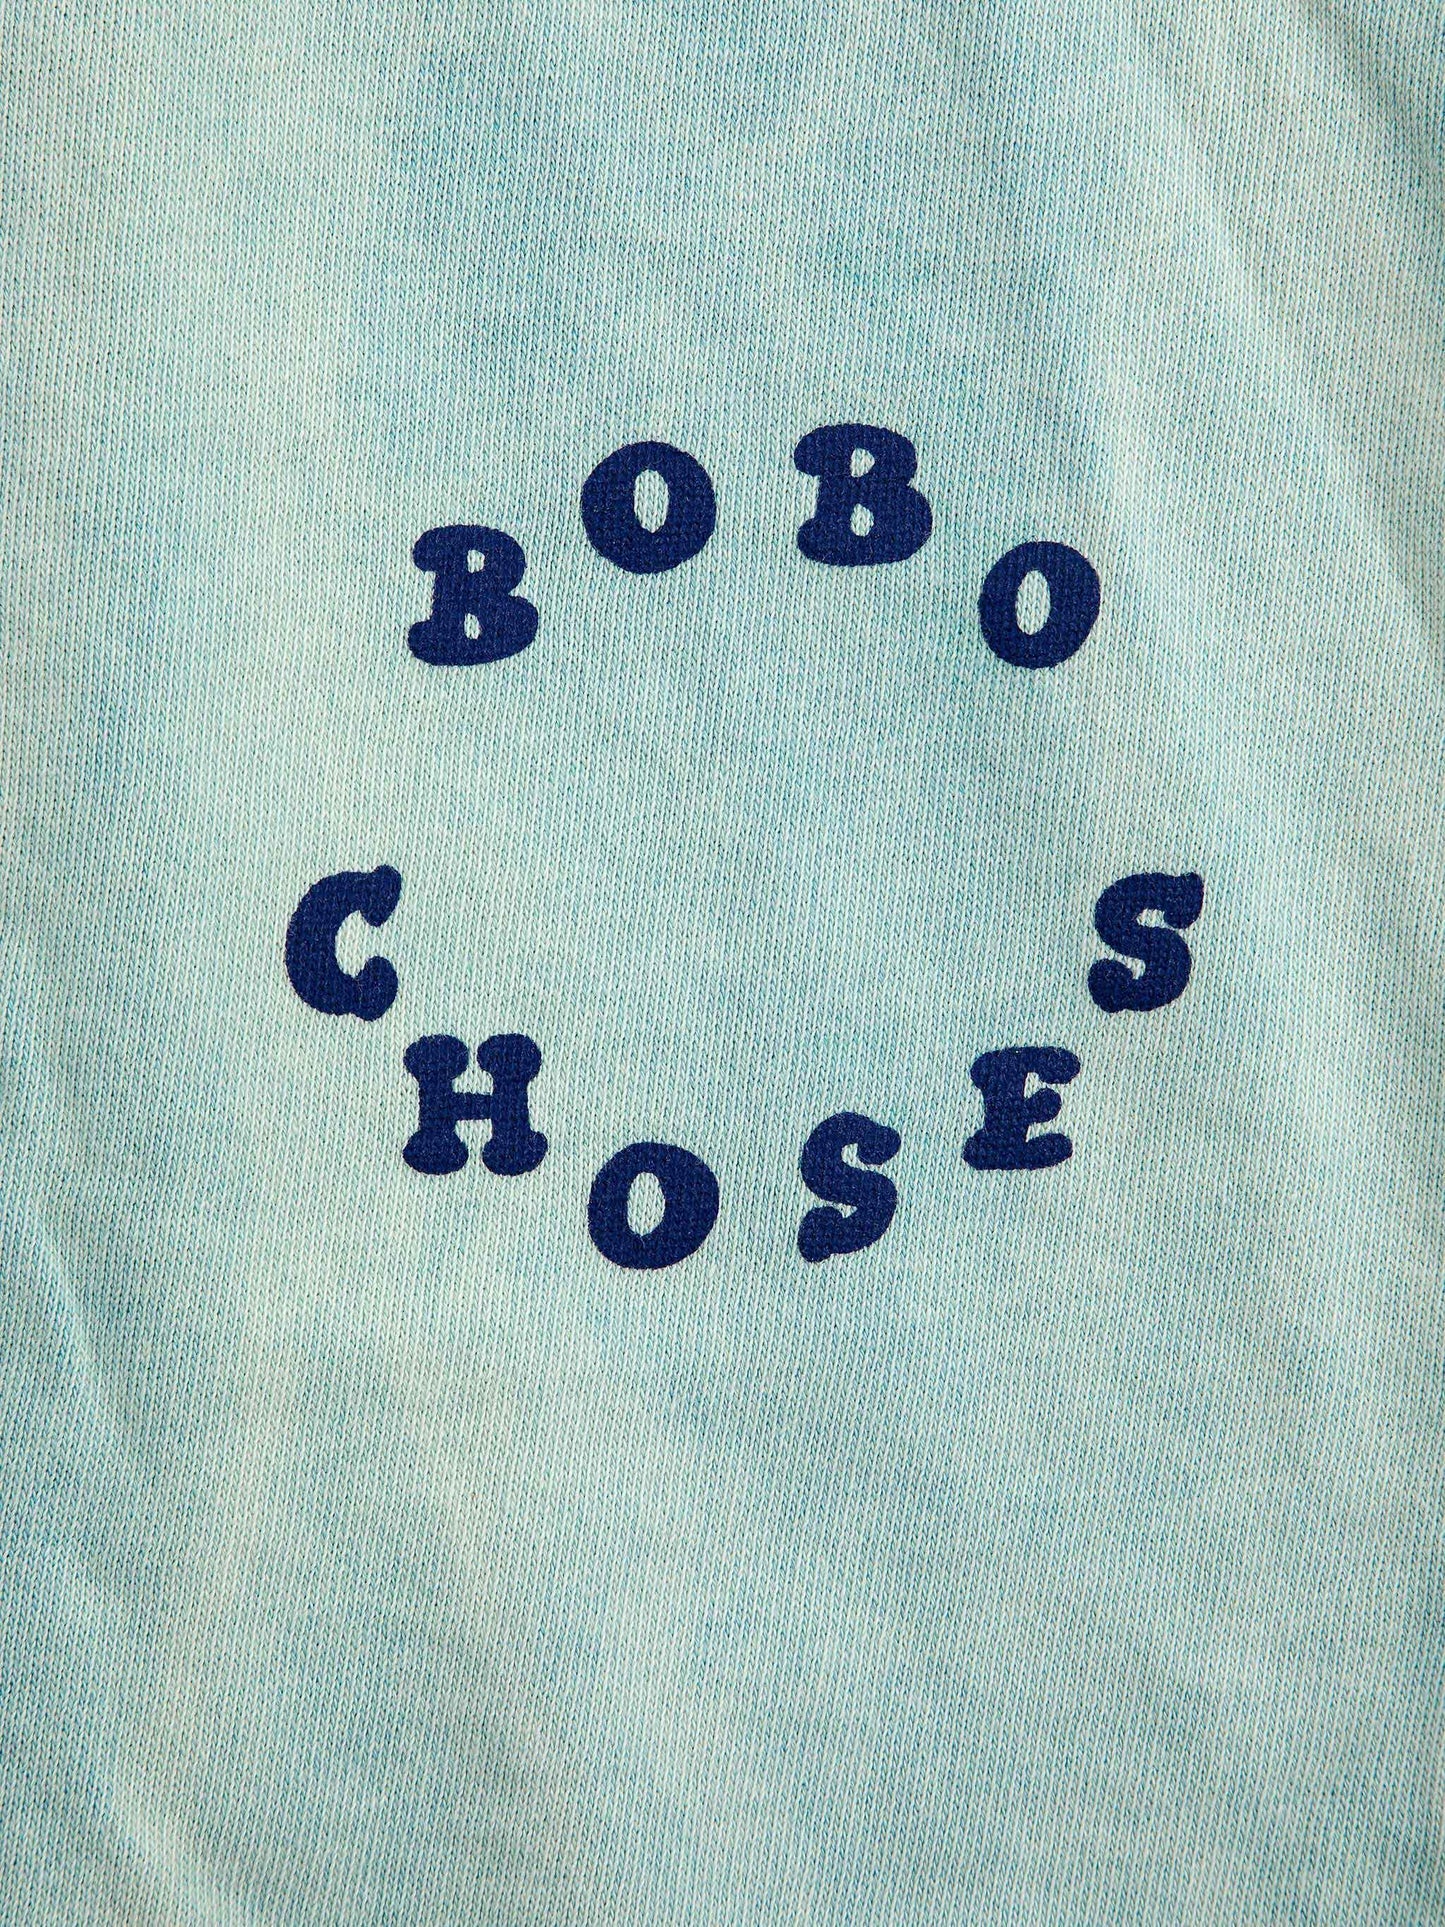 Bobo Choses Circle Jogging Pants by Bobo Choses. Light blue washed, jogger style pants featuring Bobo Choses circle decal.